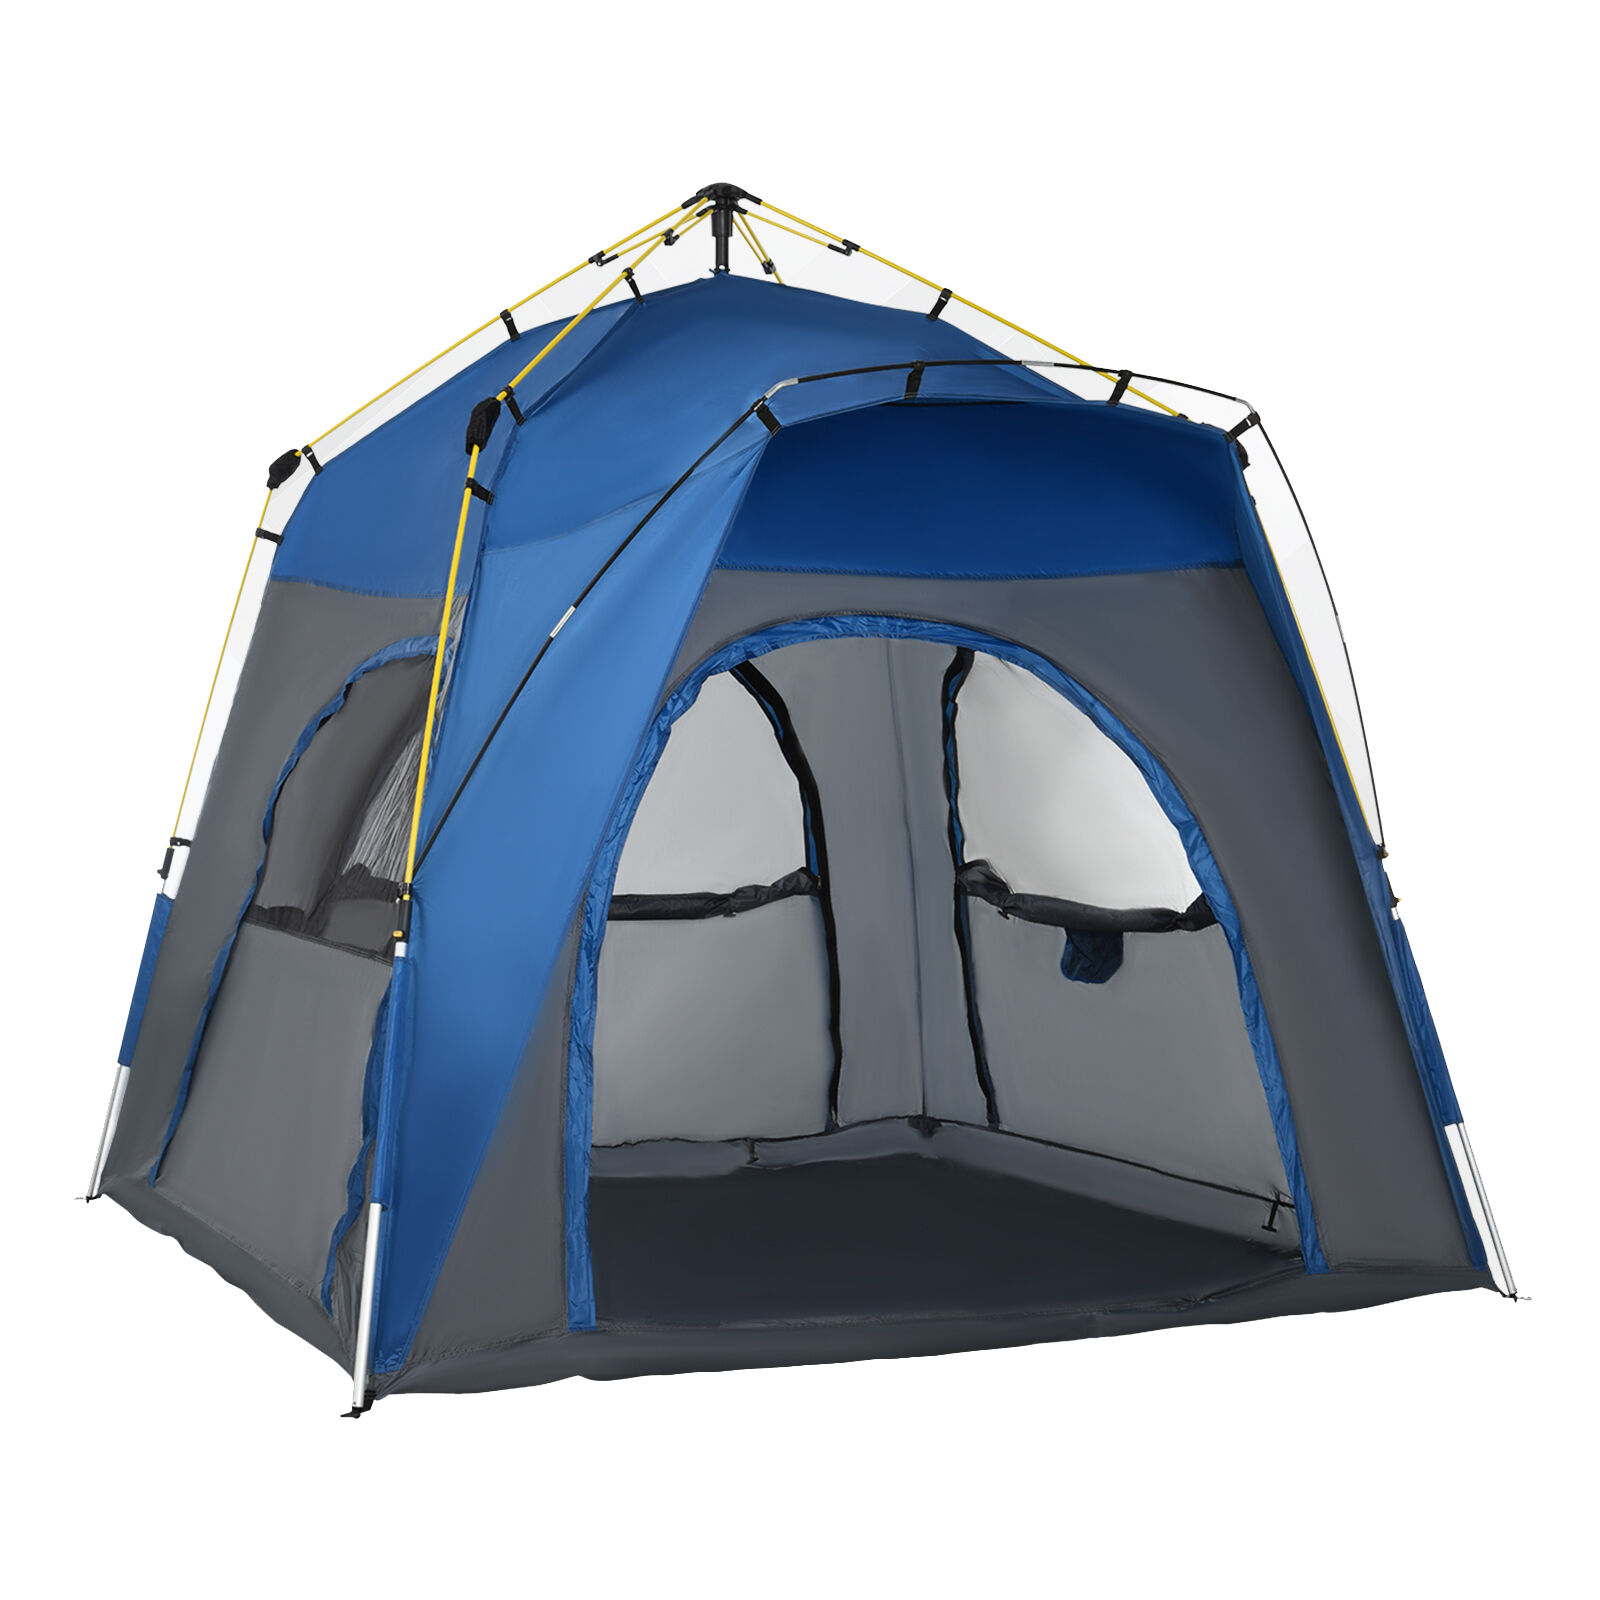 Outsunny Tente de camping familiale 4 personnes pop-up 4 fenêtres pare-soleil 2,4L x 2,4l x 1,95H m fibre verre polyester gris bleu